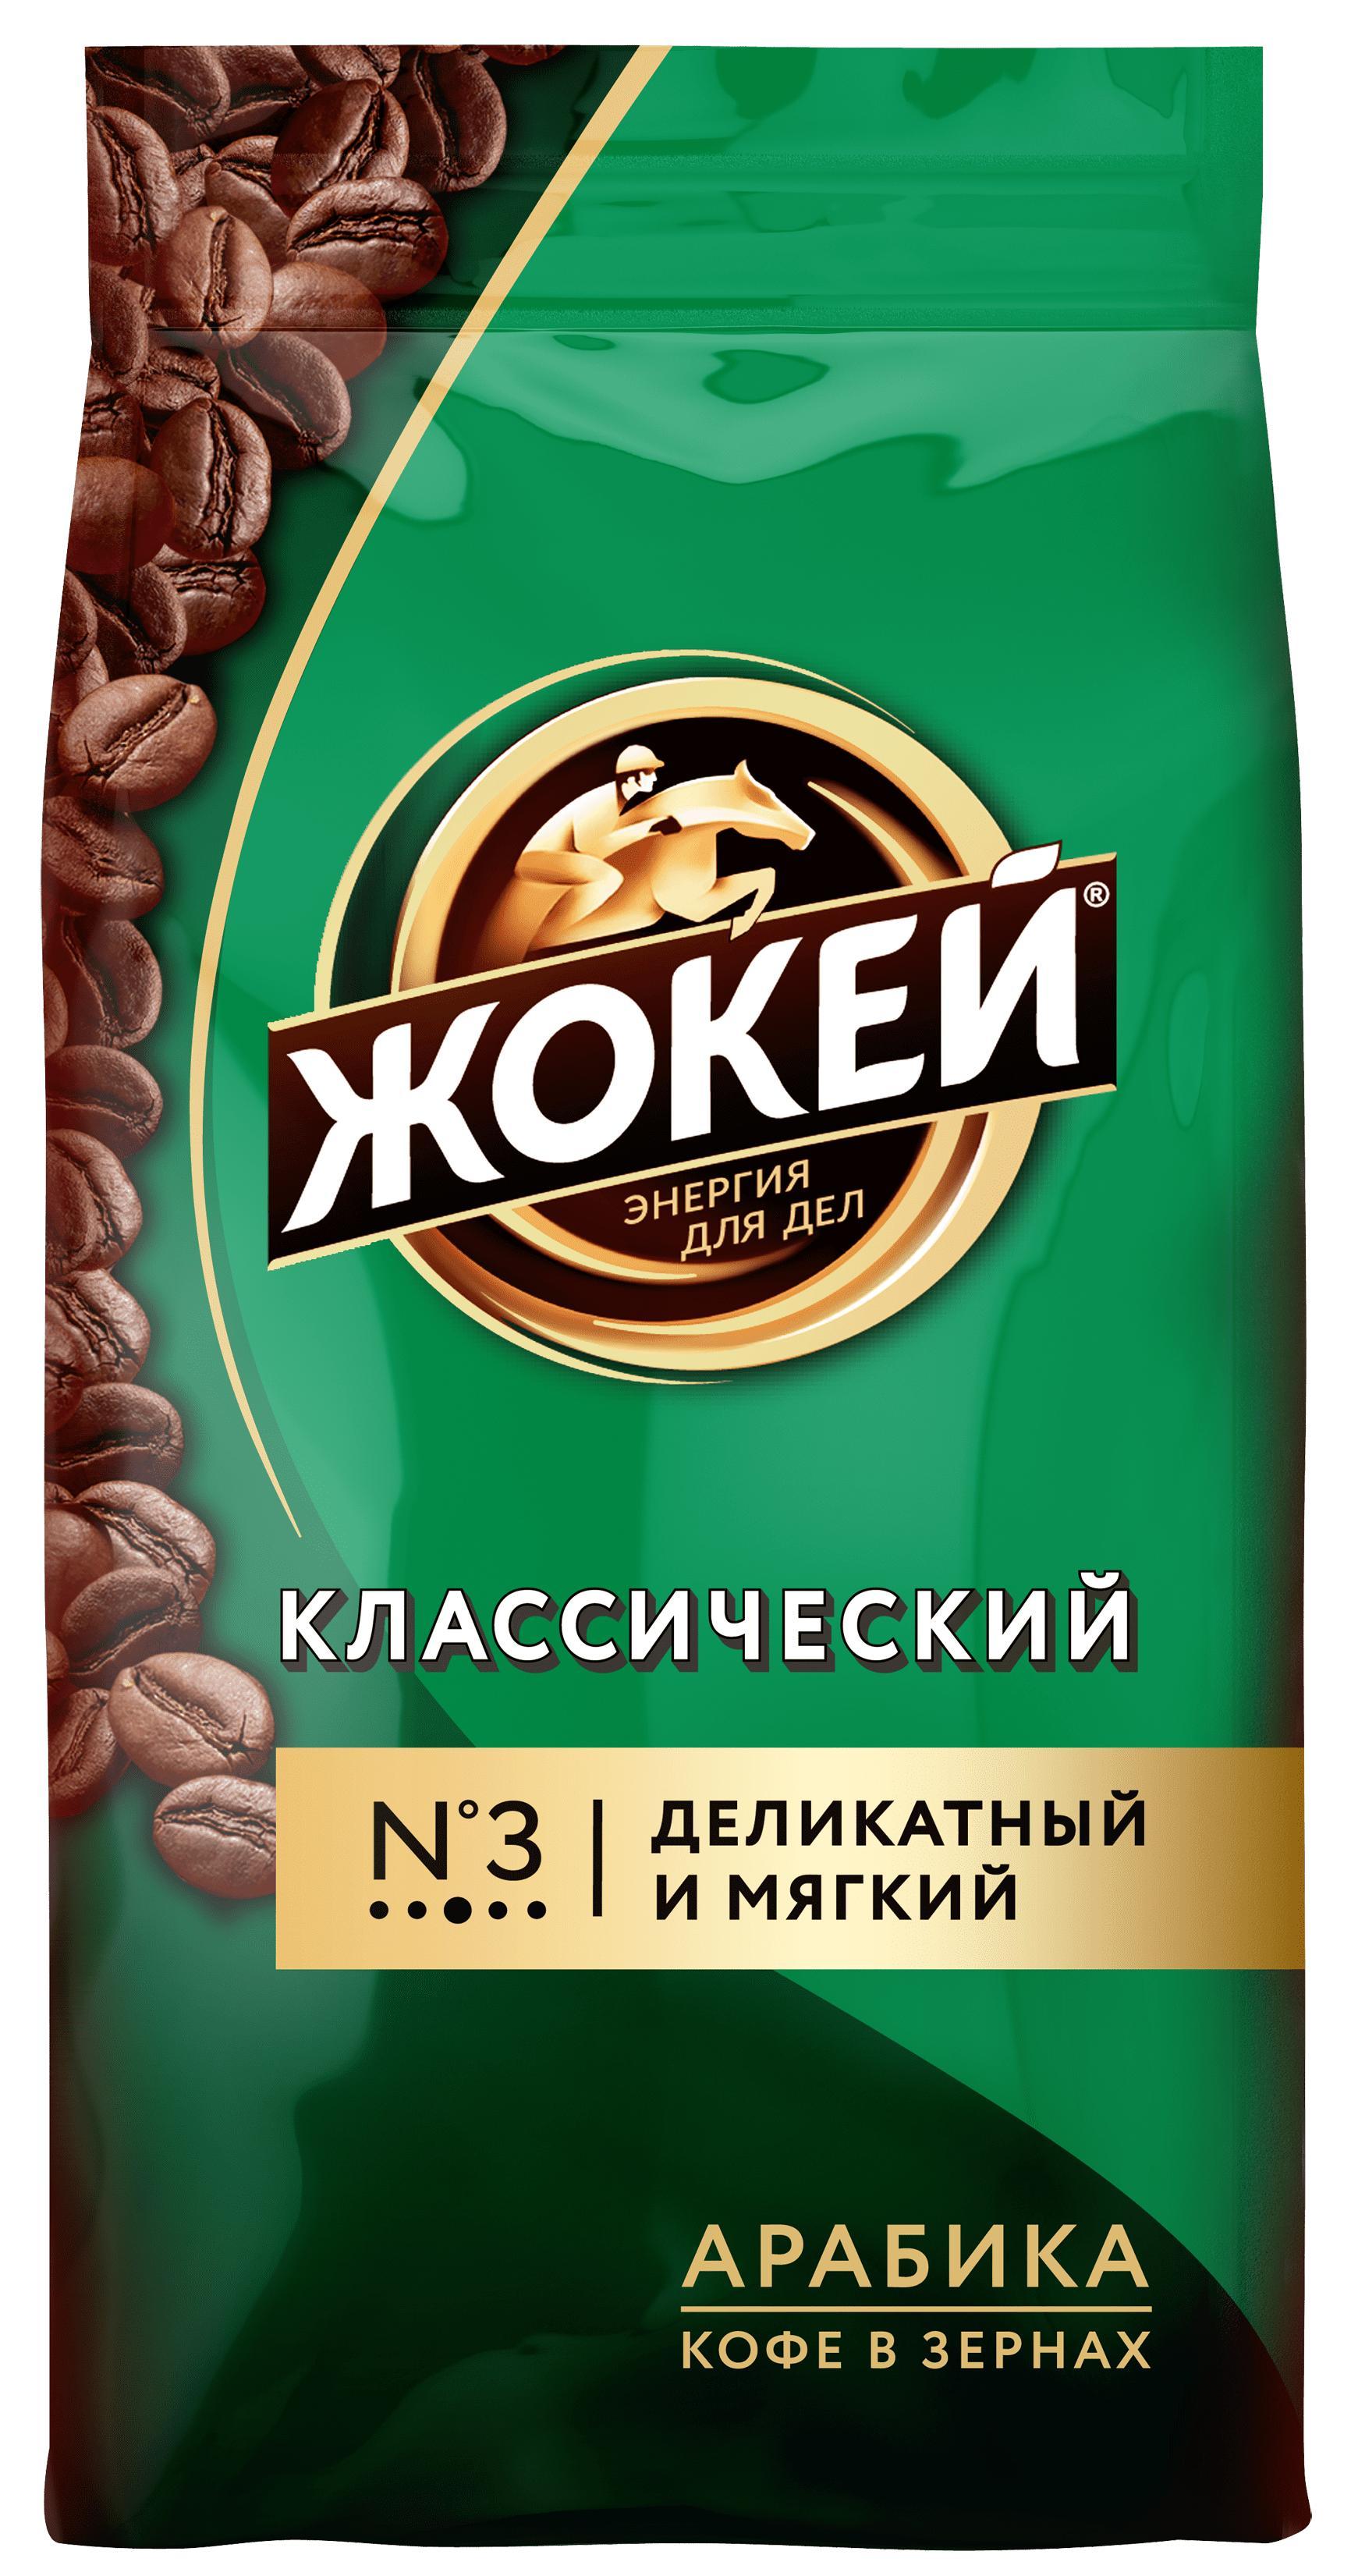 Кофе в зернах Жокей Классический, 900 гр., фольгированный пакет